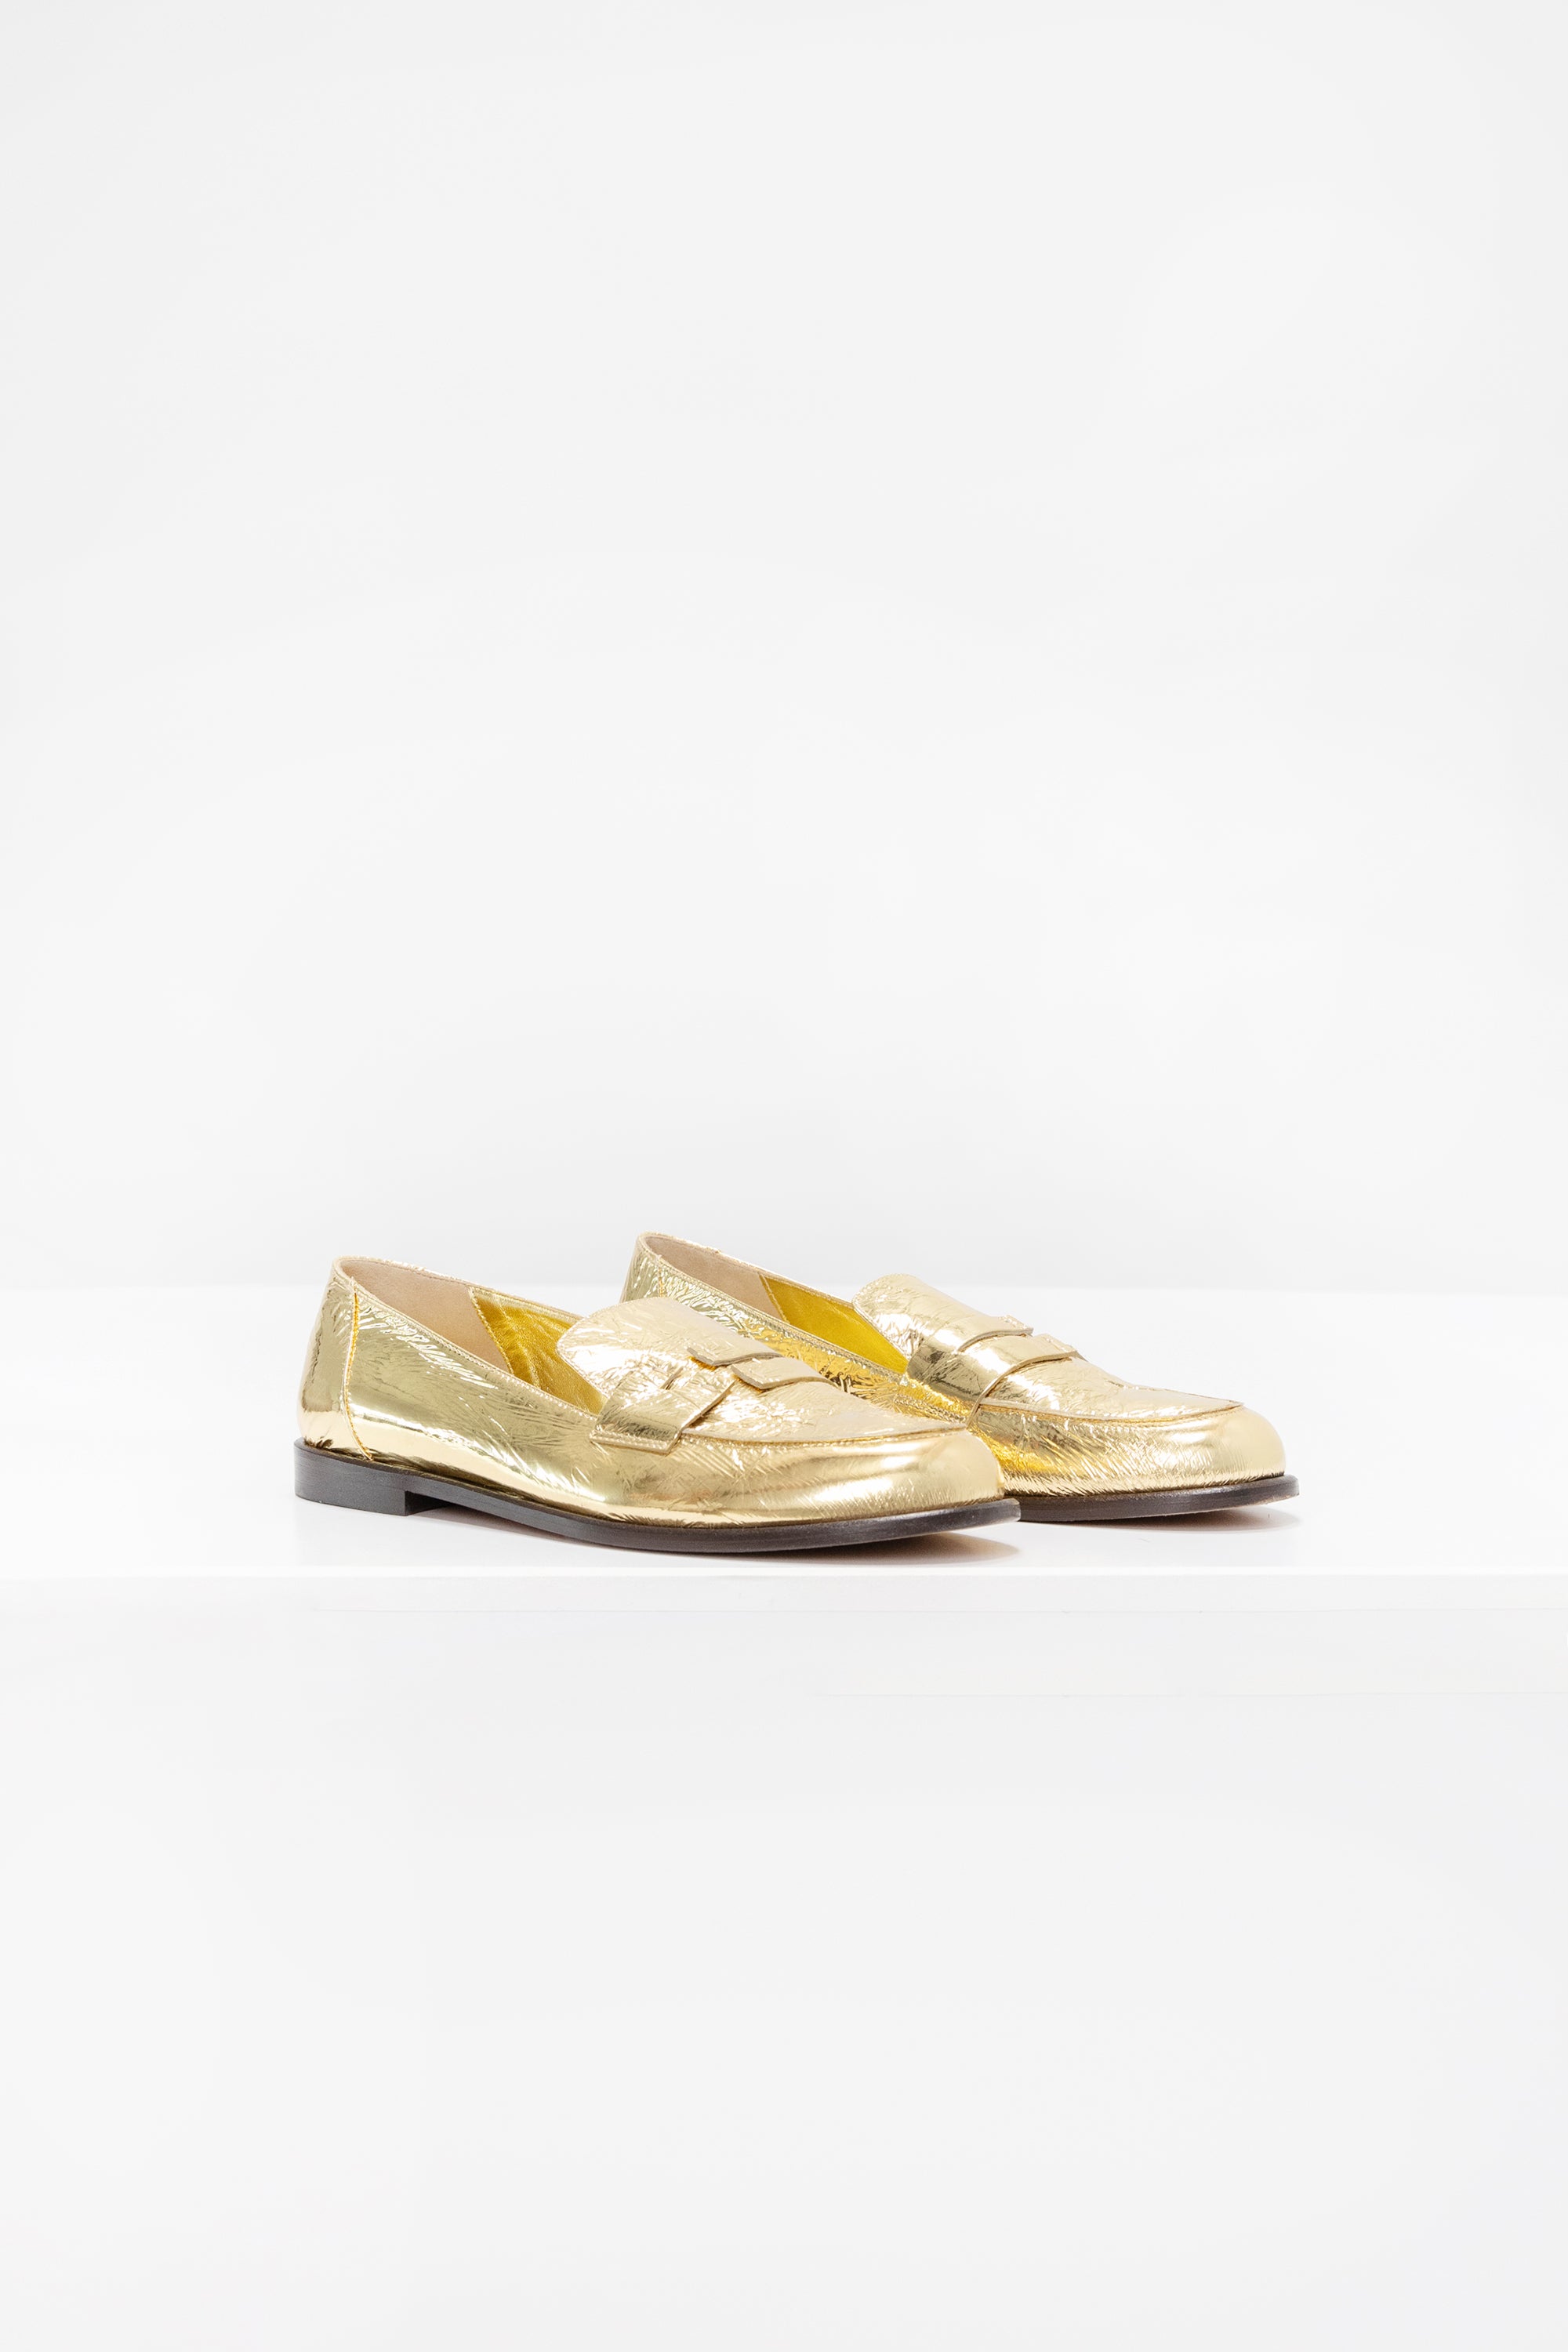 TIBI - Nacho Shoe, Gold